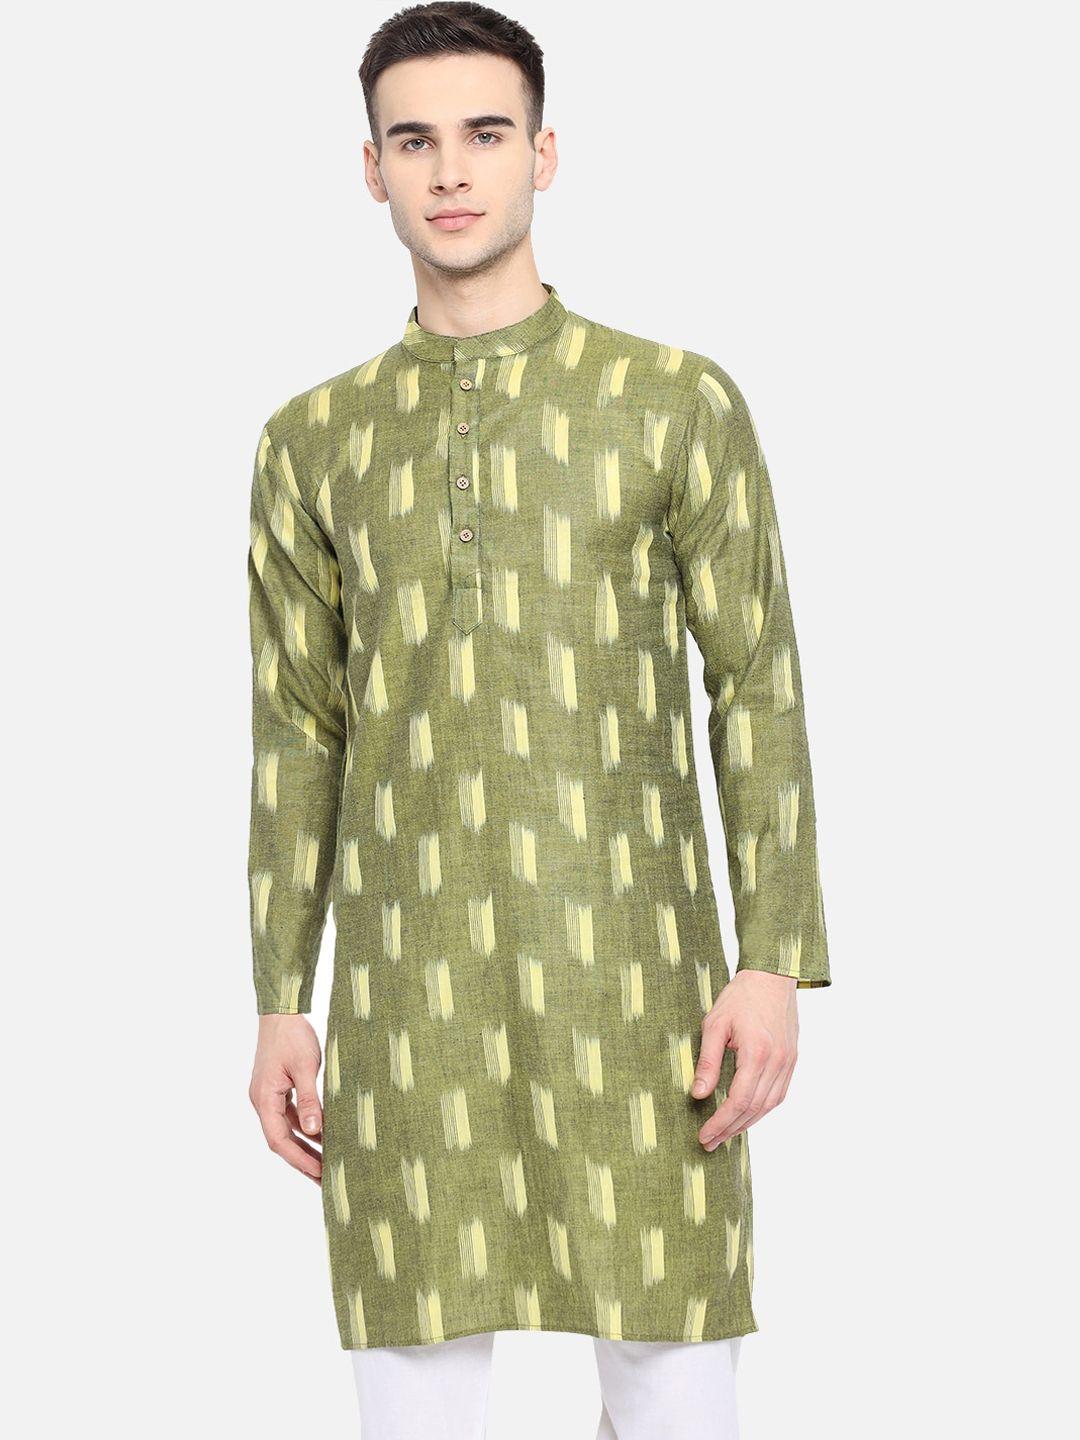 vastraa fusion ethnic motifs woven design ikat pure cotton straight kurta with pyjamas